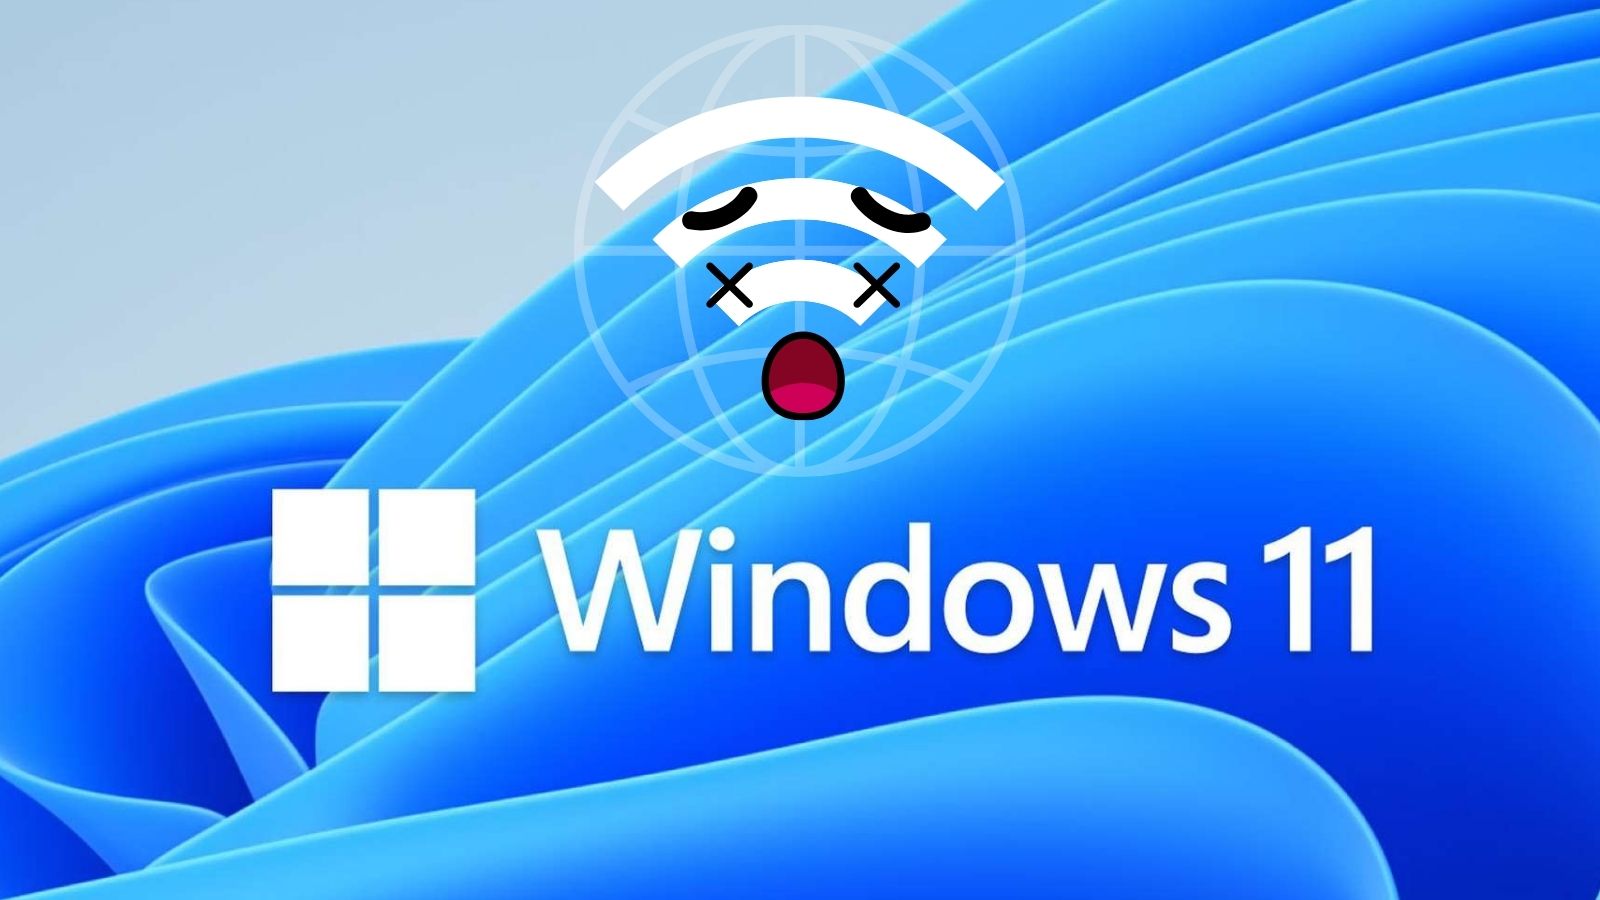 Intel rilascia aggiornamenti per risolvere la BSoD su Windows 11